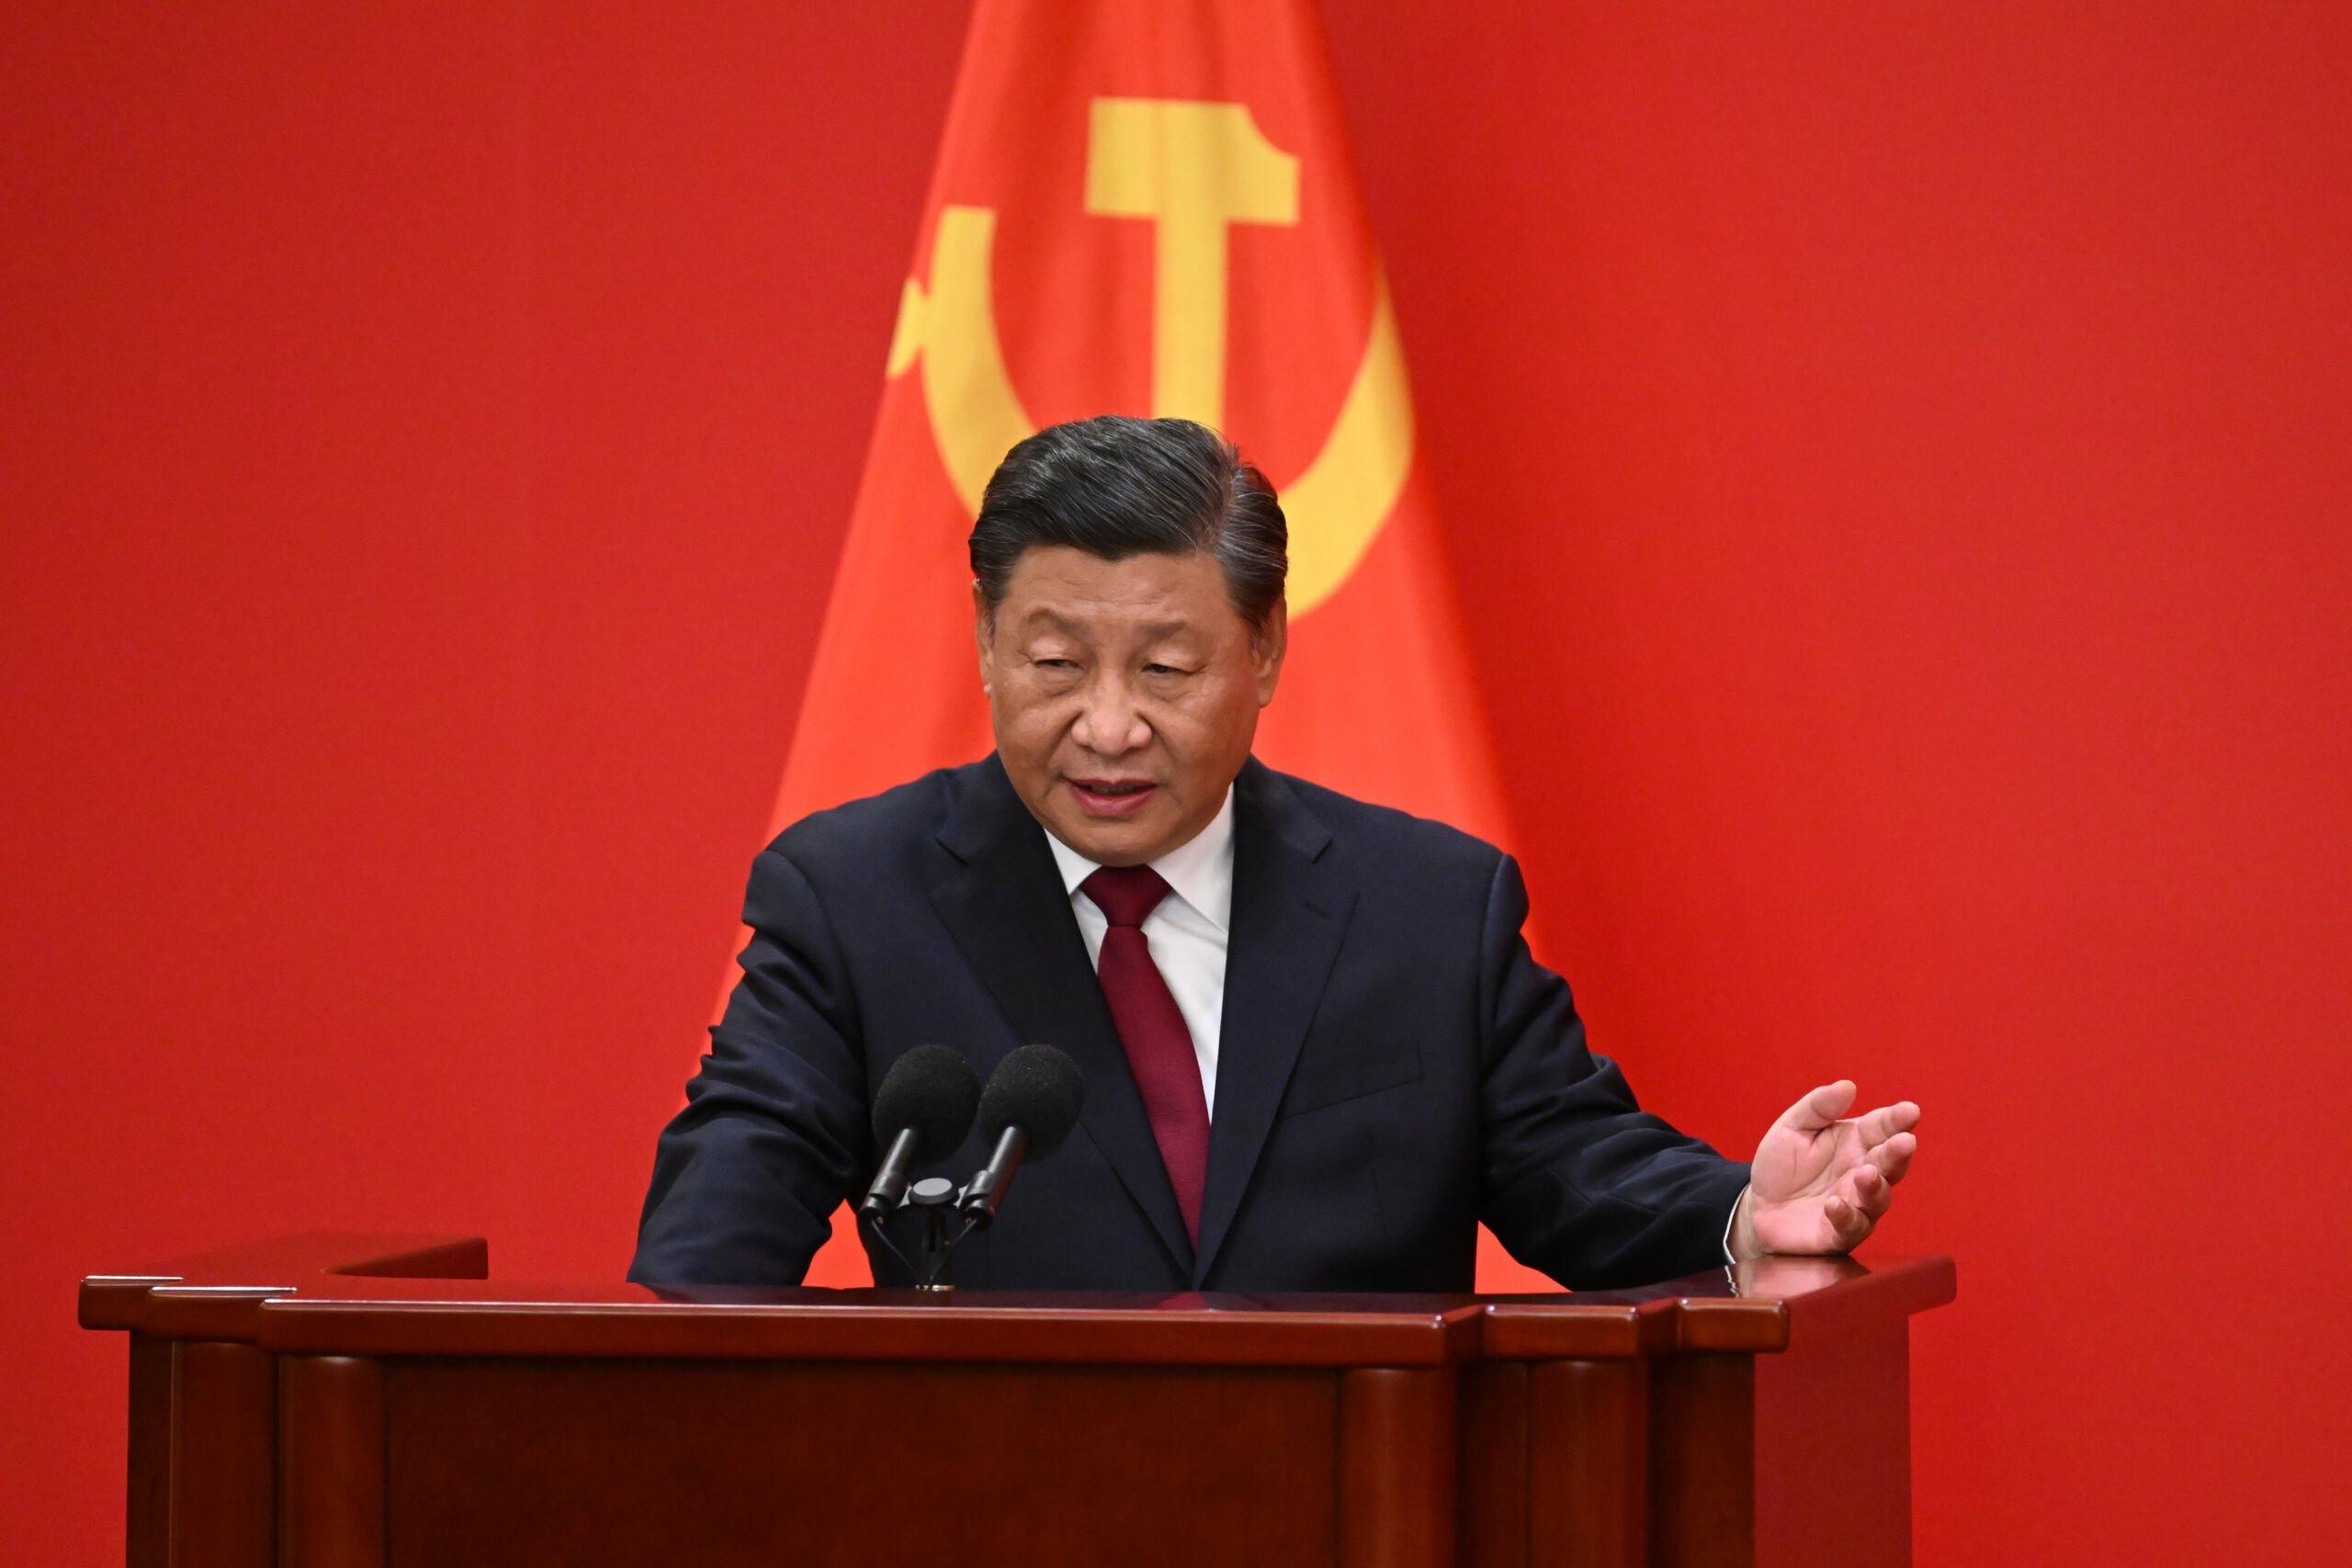 Prezydent Chin Xi Jinping przemawia podczas wprowadzenia członków nowego Komitetu Stałego Biura Politycznego Chińskiej Partii Komunistycznej, najwyższego organu decyzyjnego w kraju, do mediów w Wielkiej Sali Ludowej w Pekinie 23 października 2022 r.